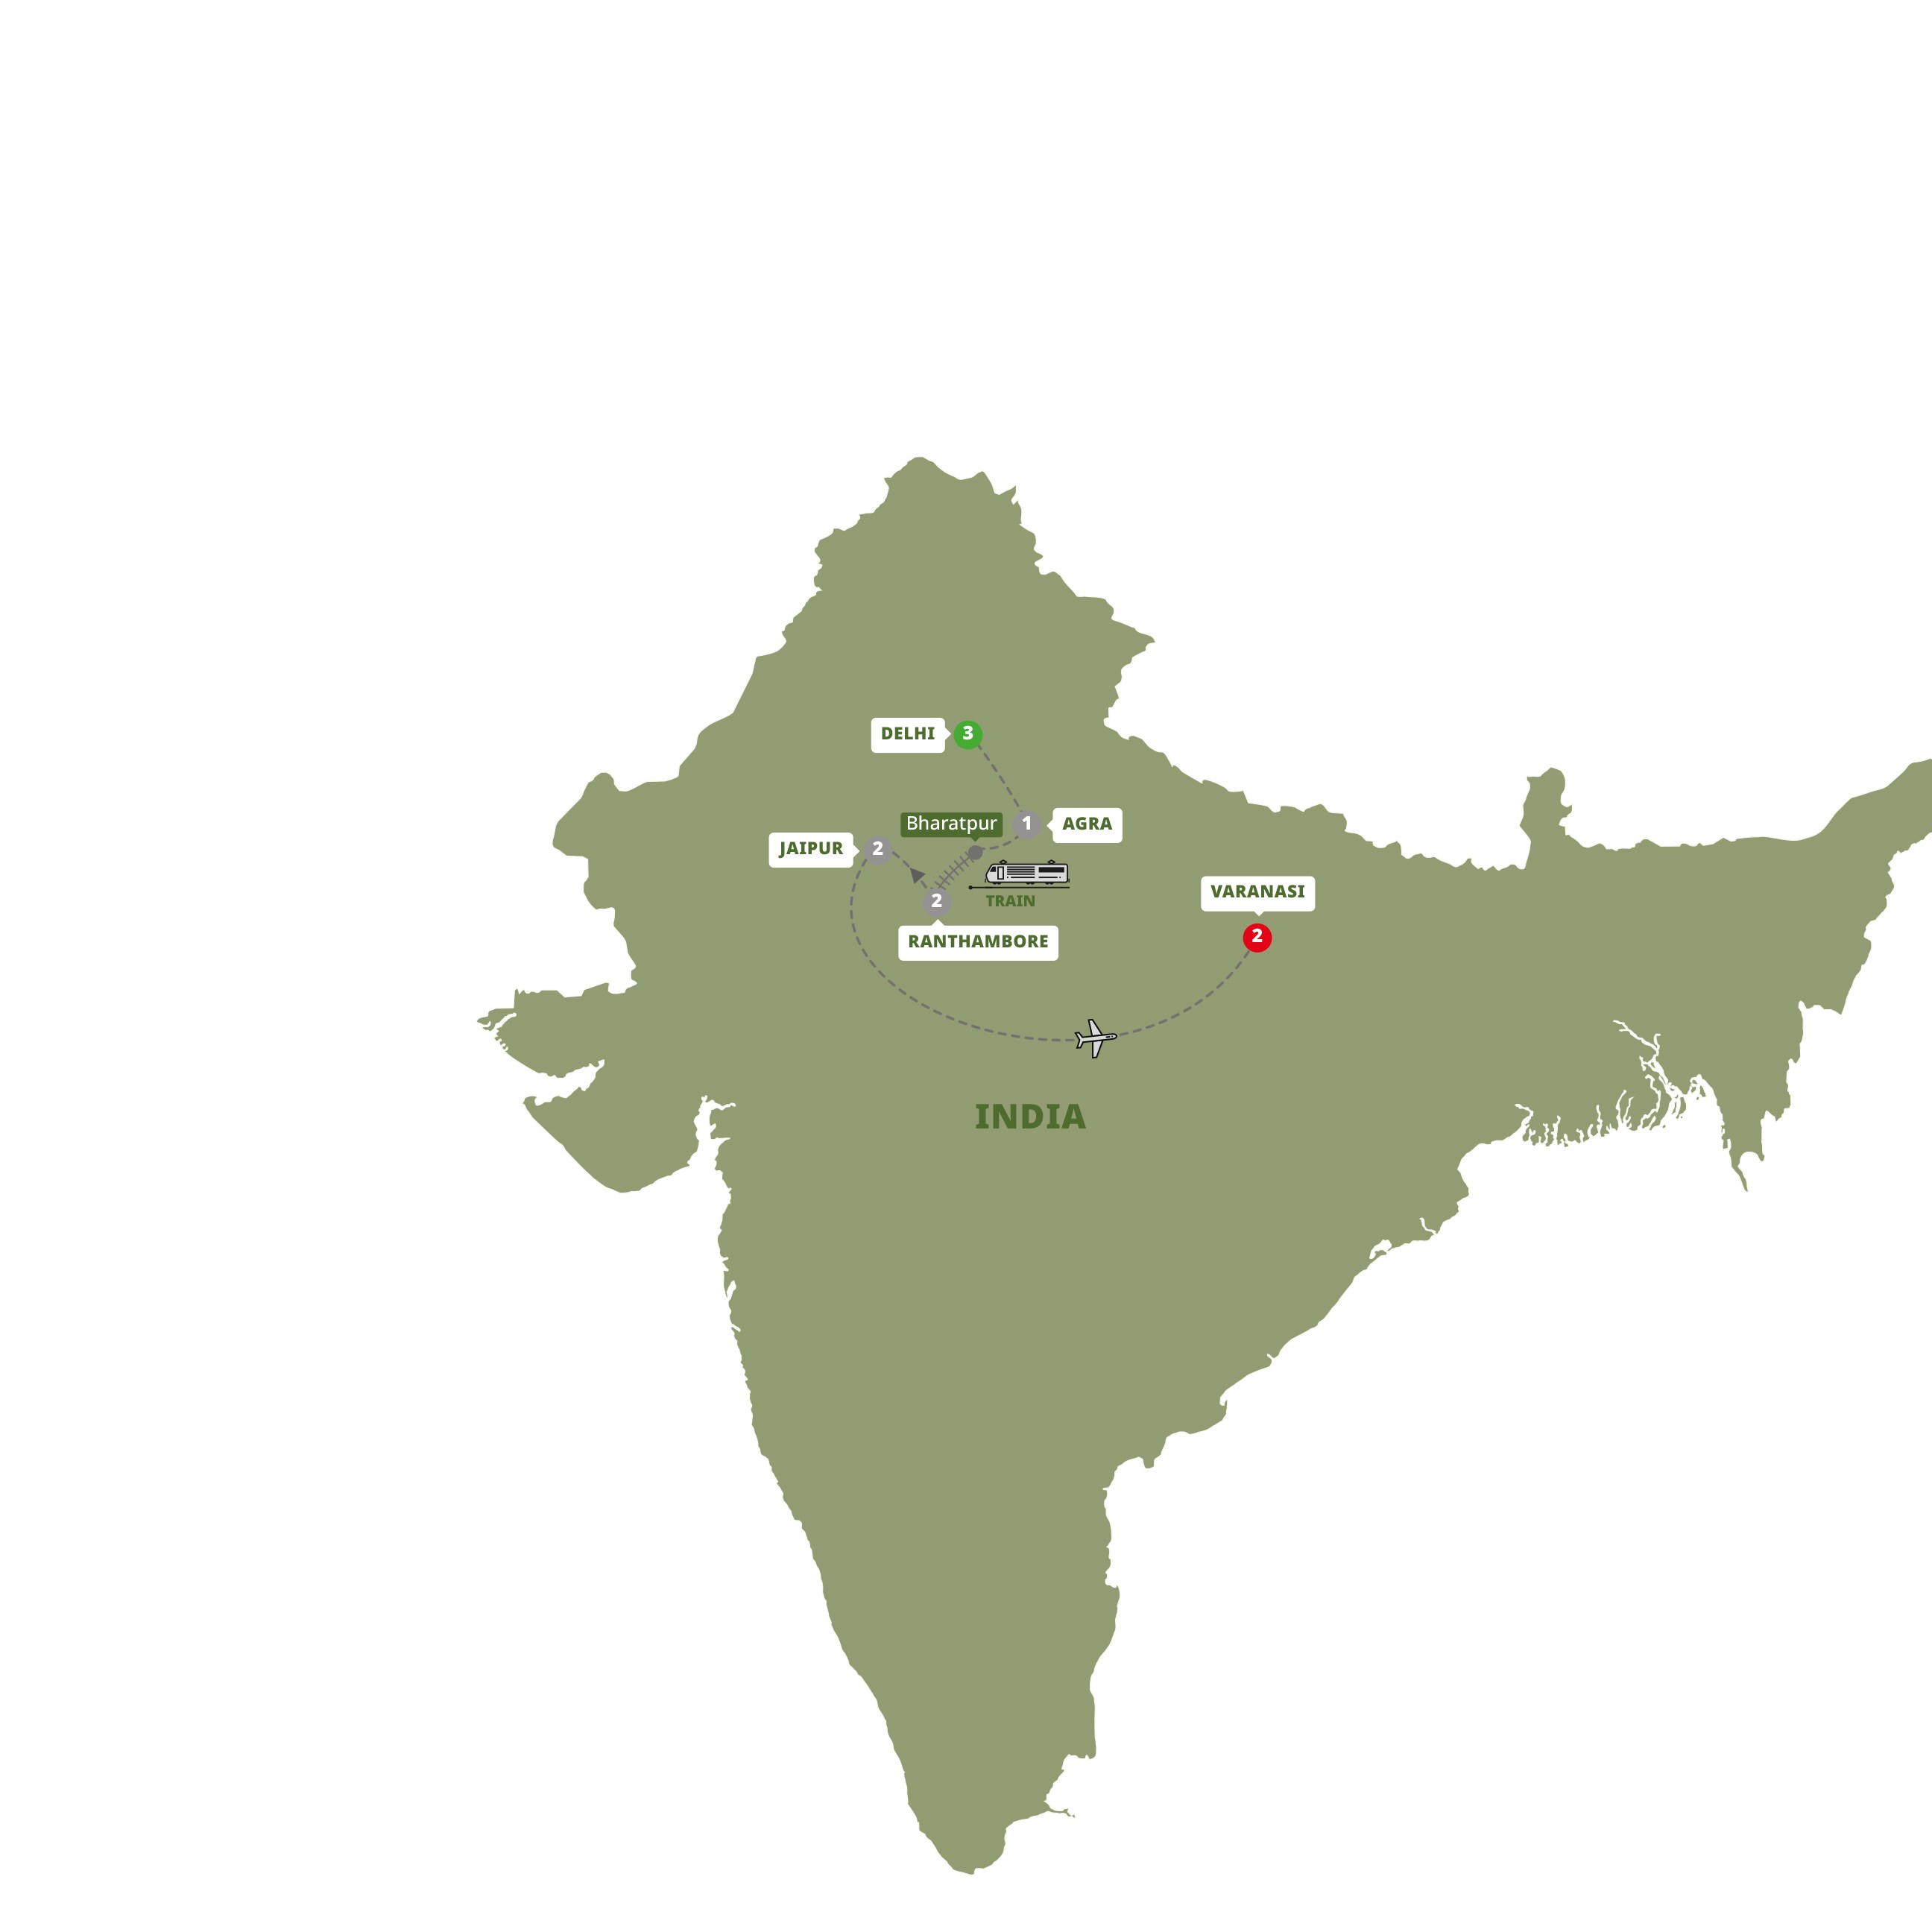 tourhub | Trafalgar | Best of India | Tour Map